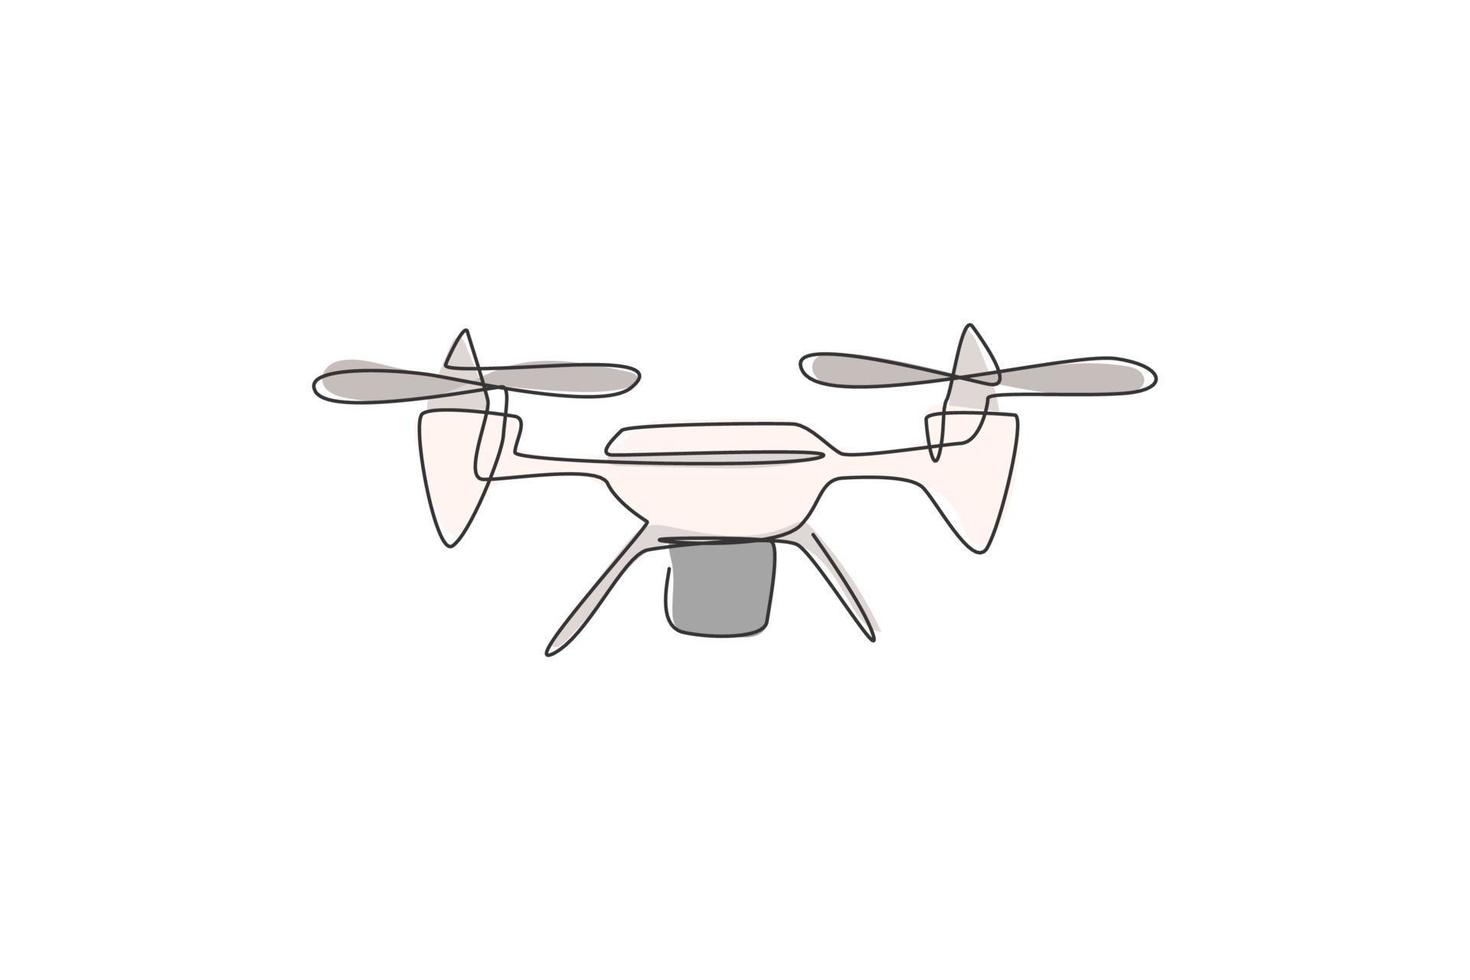 een enkele lijntekening van vliegend drone vliegtuig, onbemand vliegtuig vector grafische illustratie. moderne luchtgadget voor videografieconcept. modern ononderbroken lijntekeningontwerp